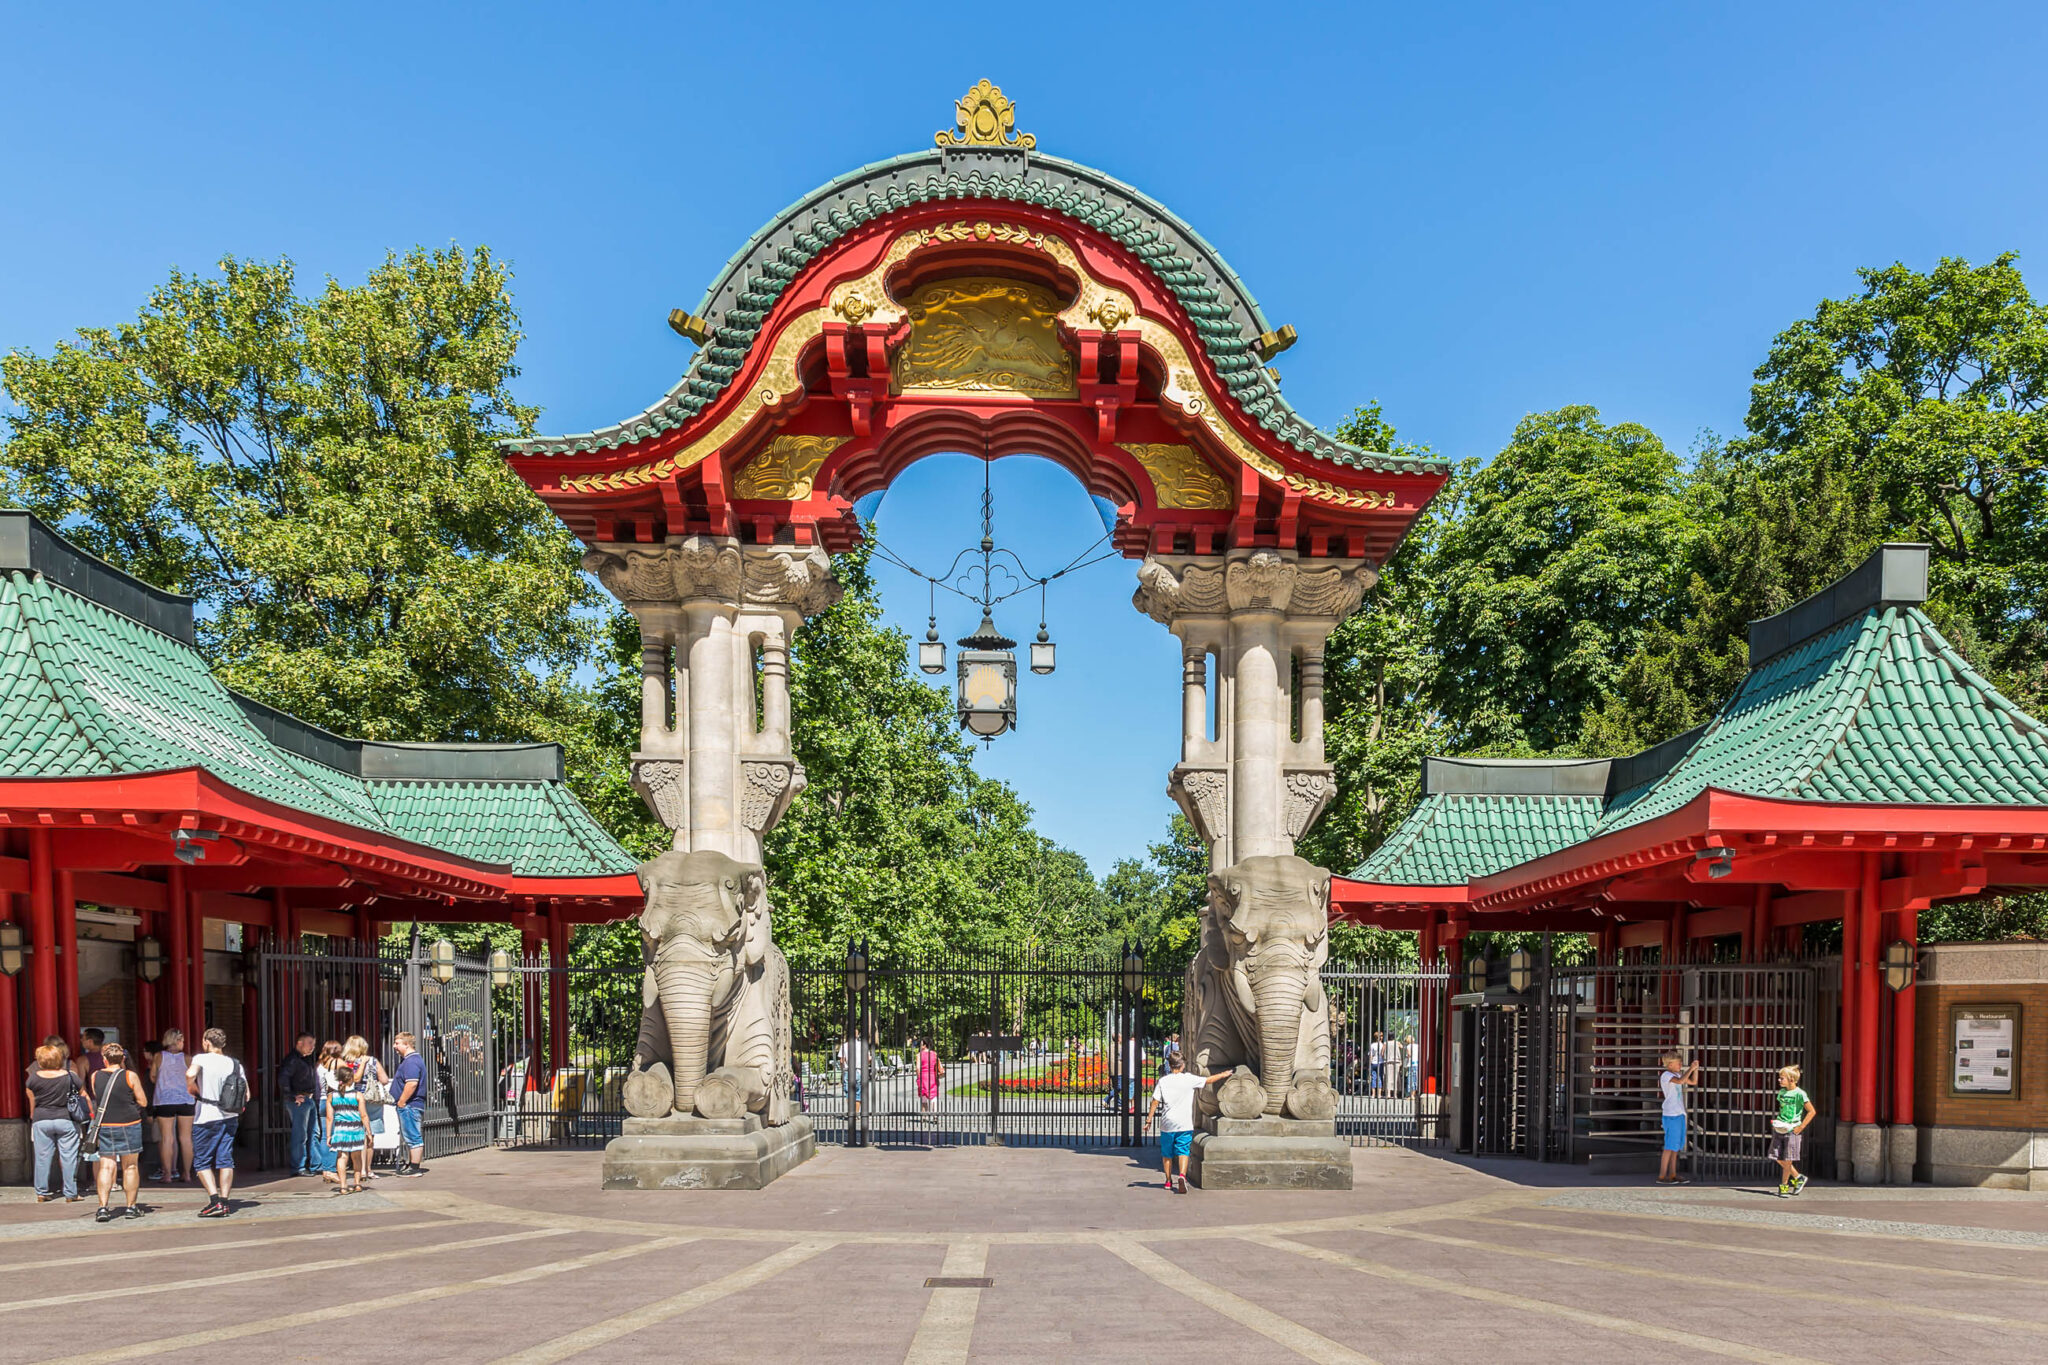 Der Zugang zum Berliner Zoo erfolgt durch das prächtige Elefantentor am Eingang Budapester Straße, Deutschland